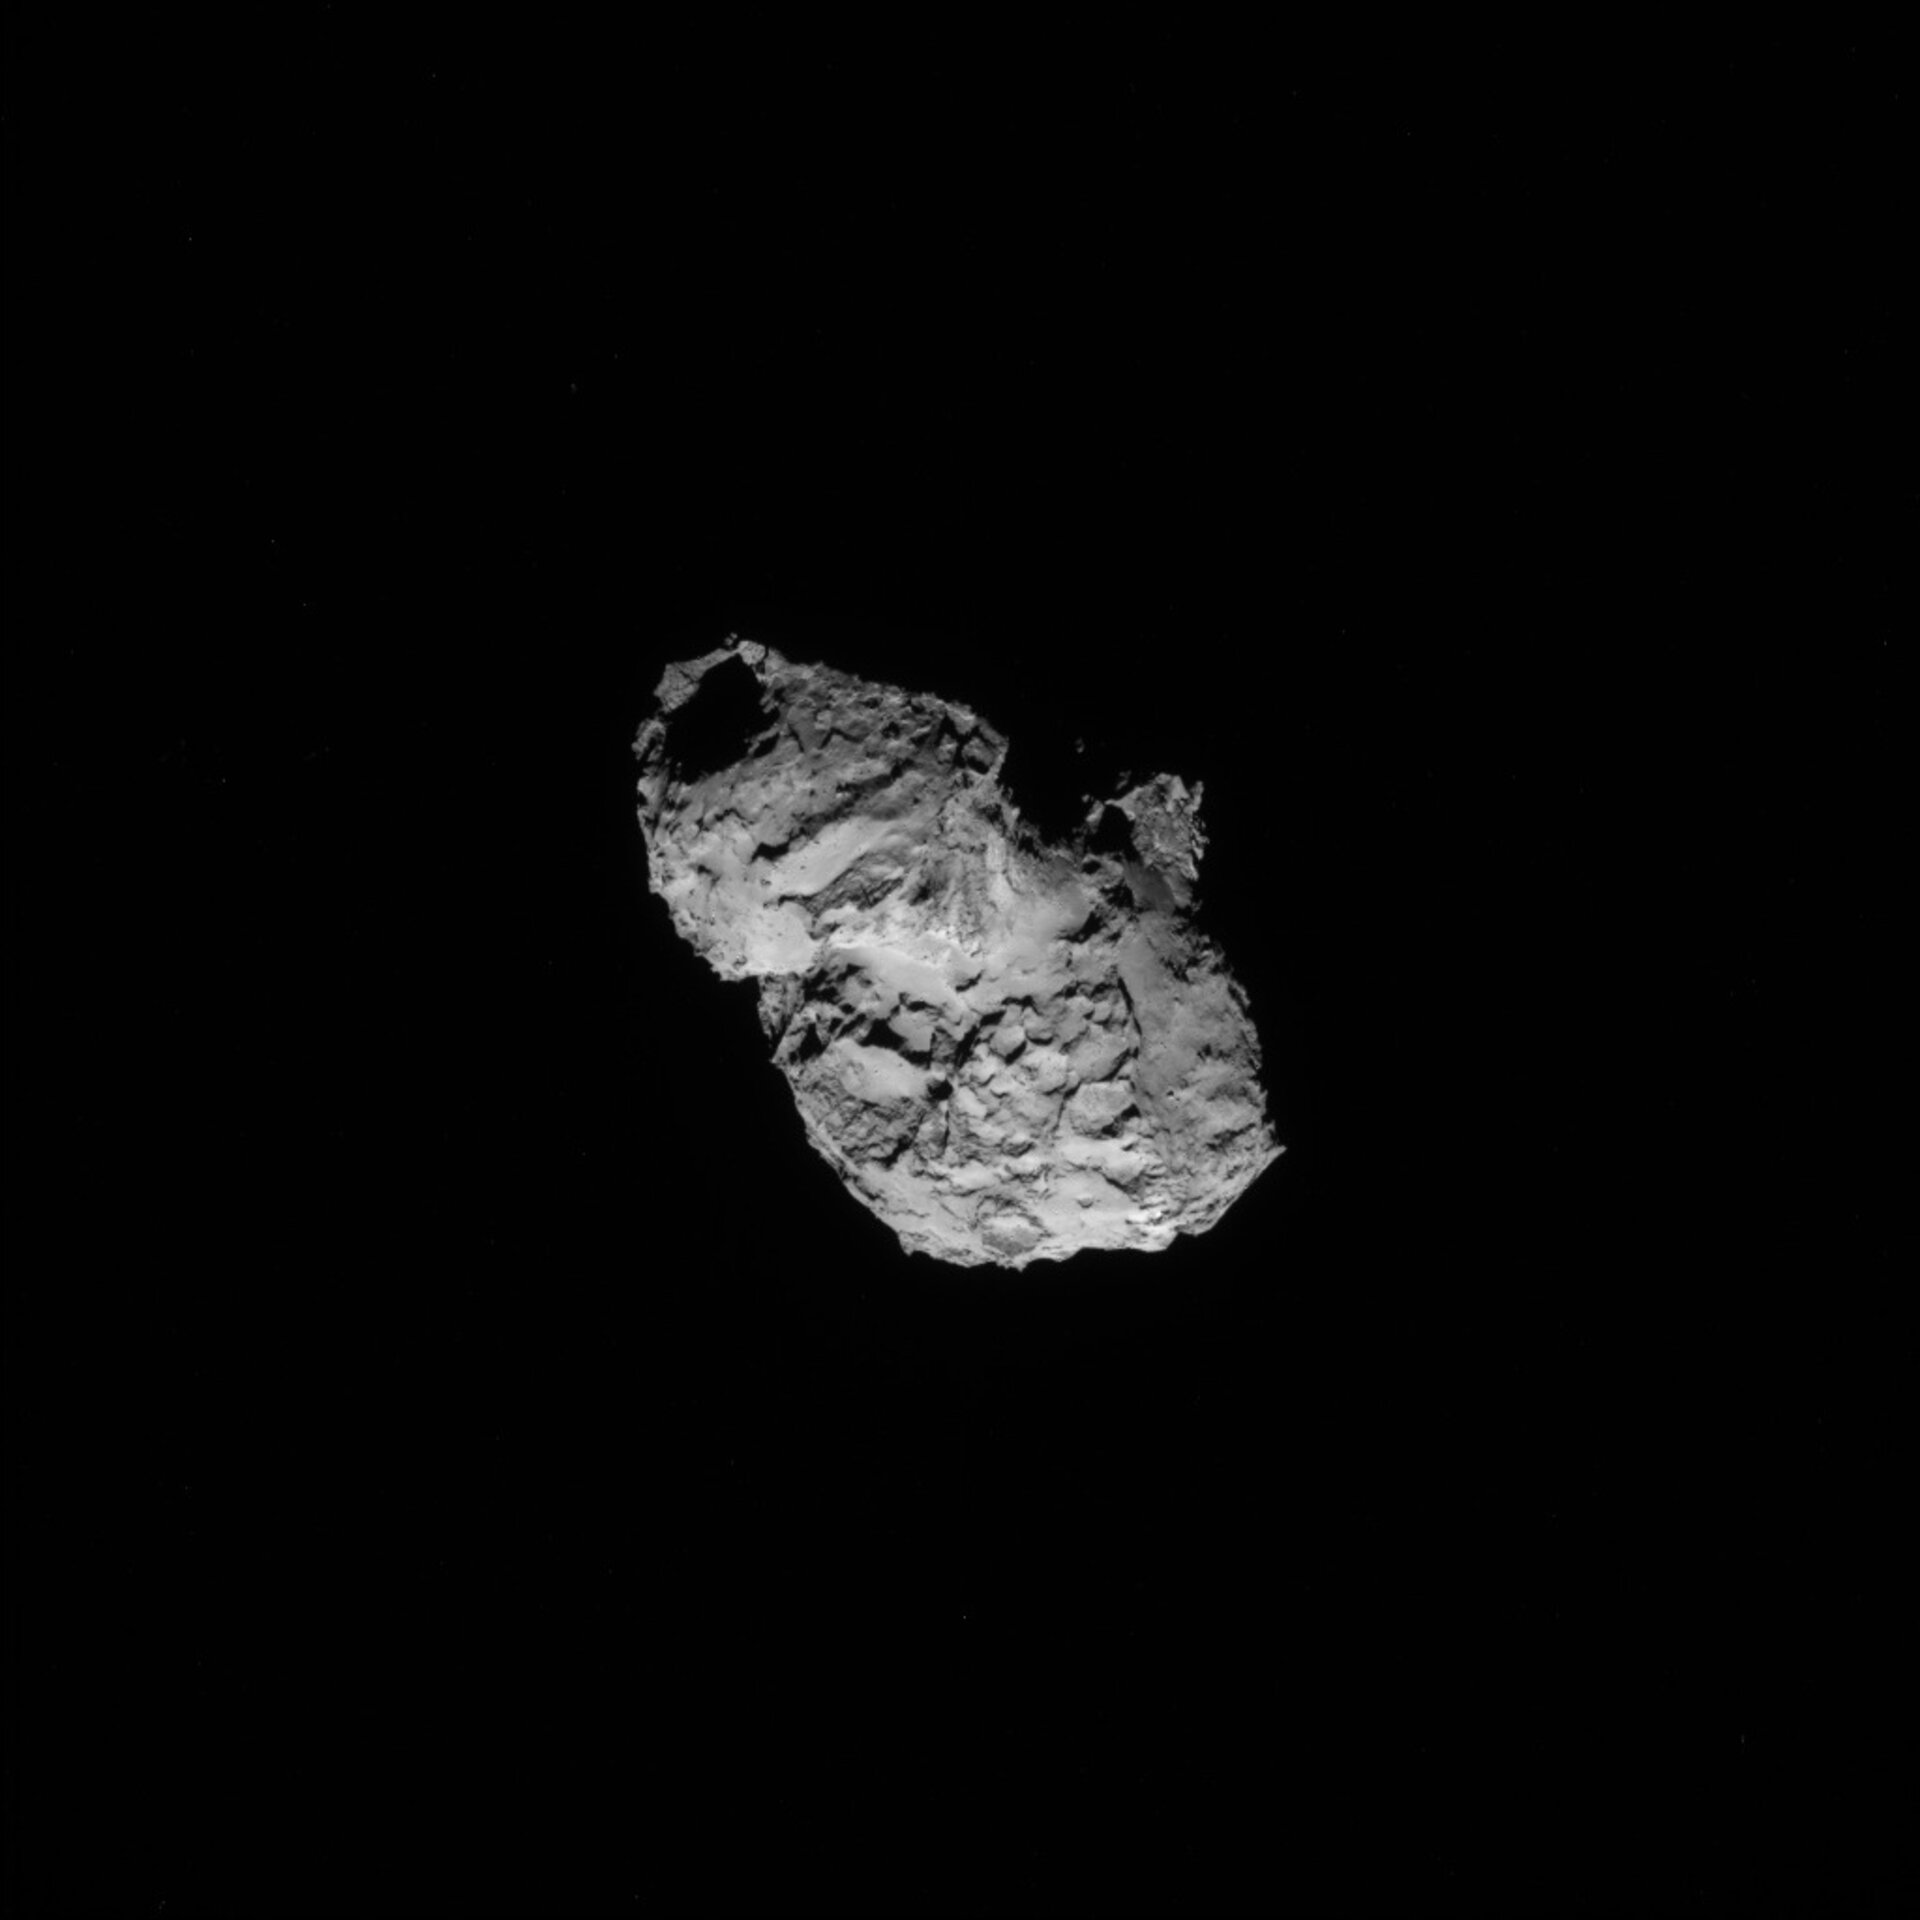 Comet on 5 August 2014 - NavCam 